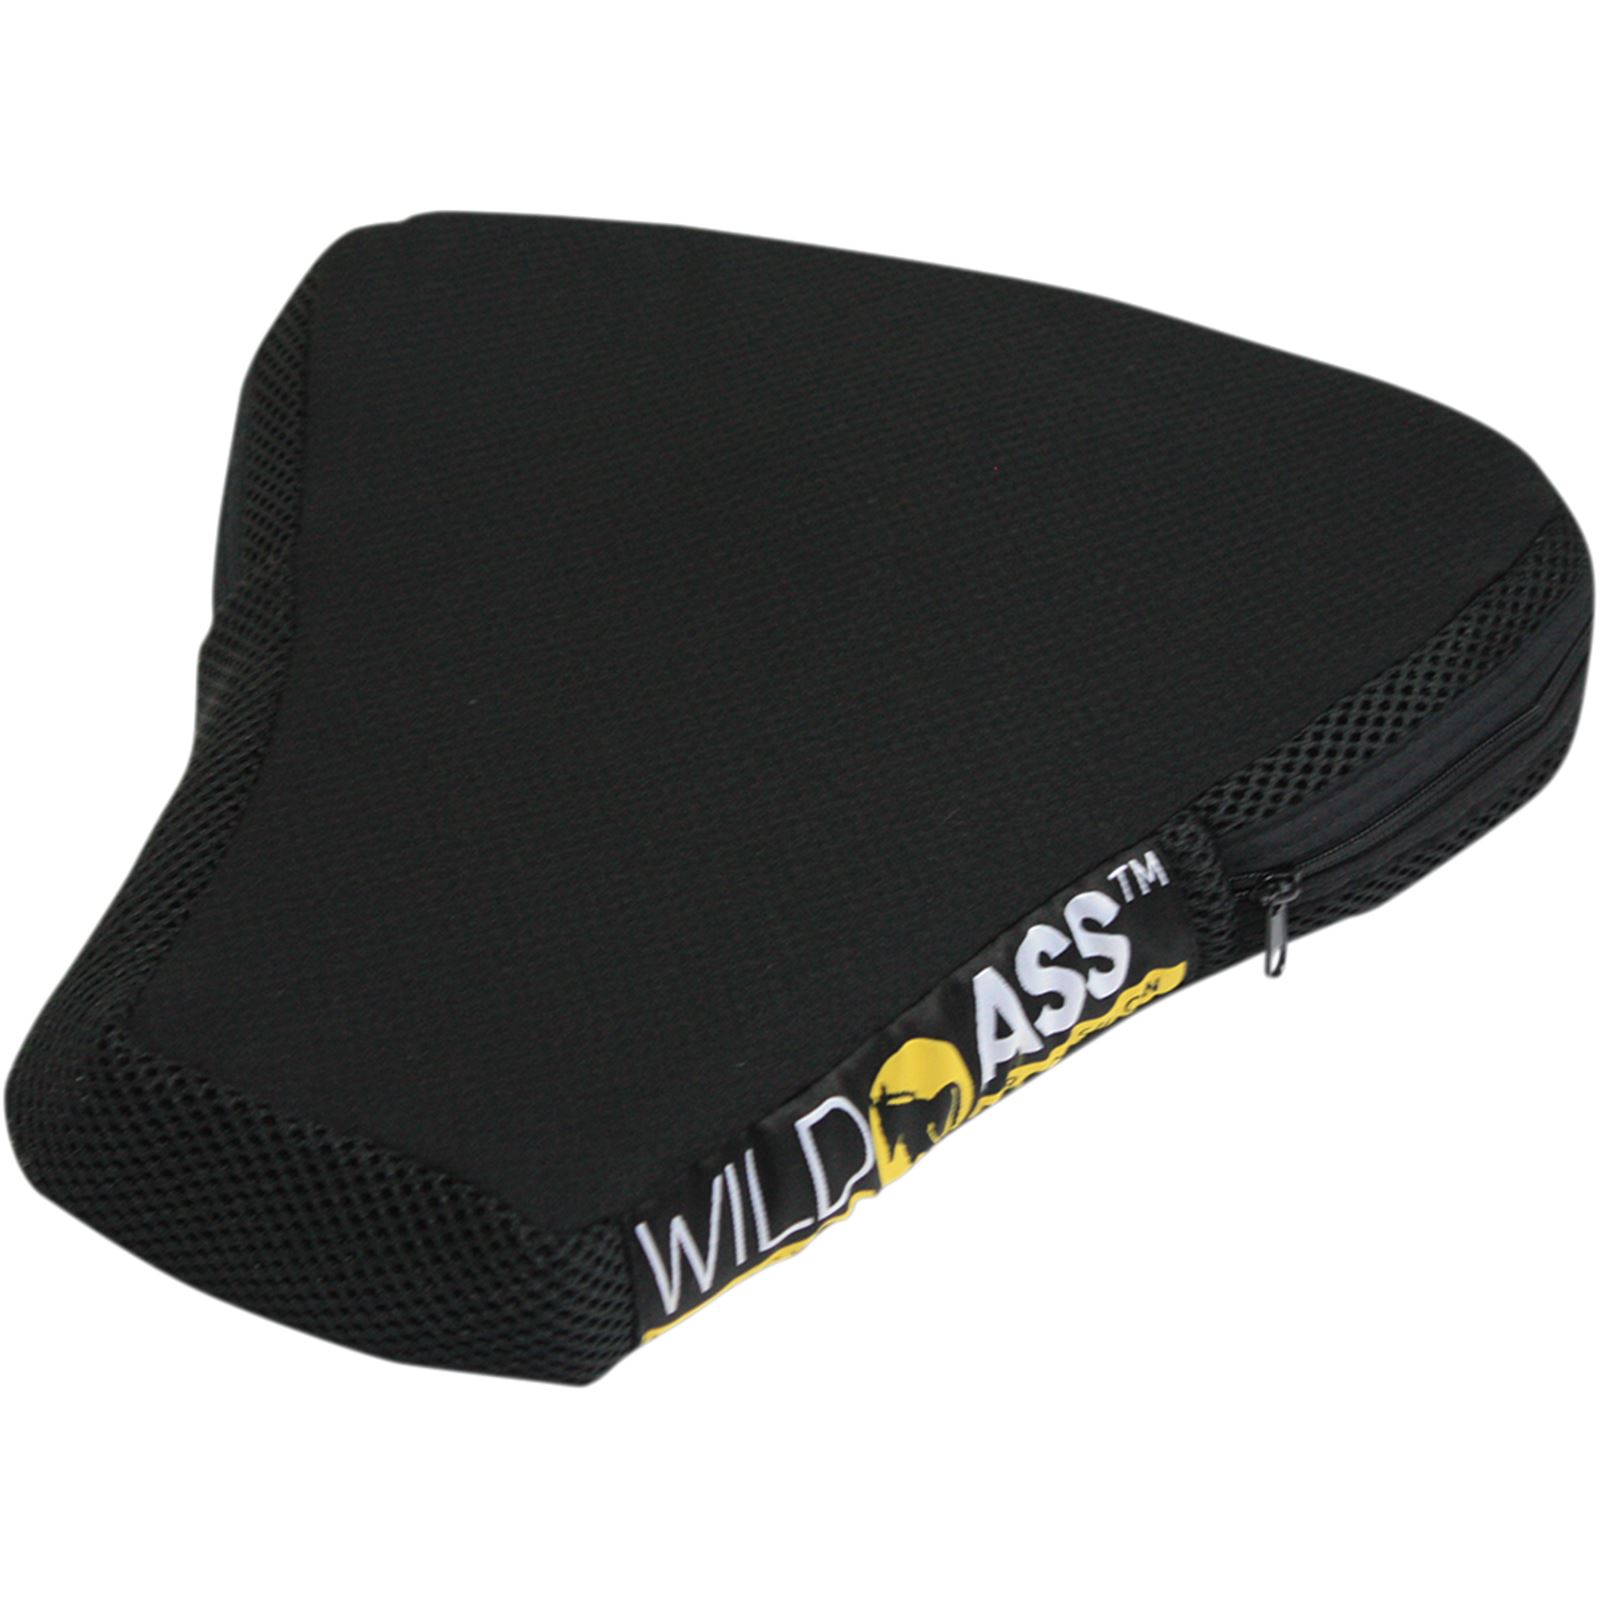 Wild Ass Airgel Cushion - Sport